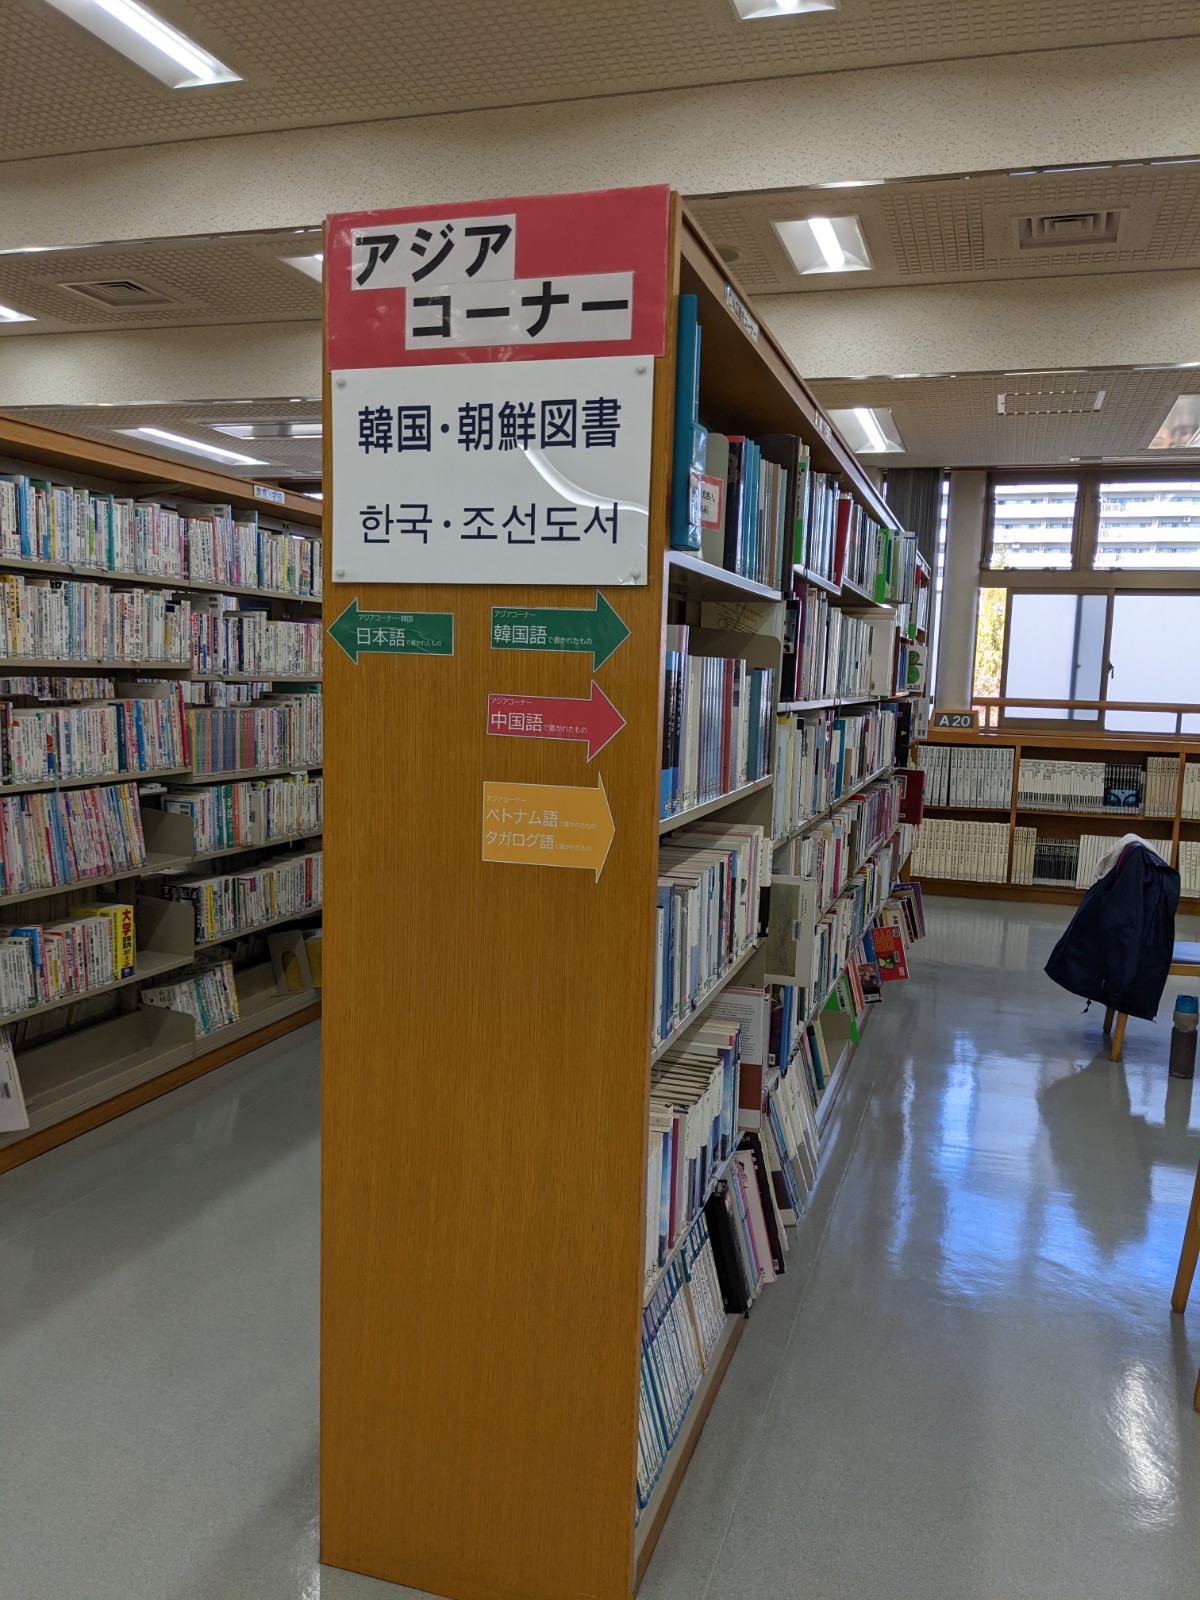 Thư viện Shin nagata – Góc đọc Châu Á